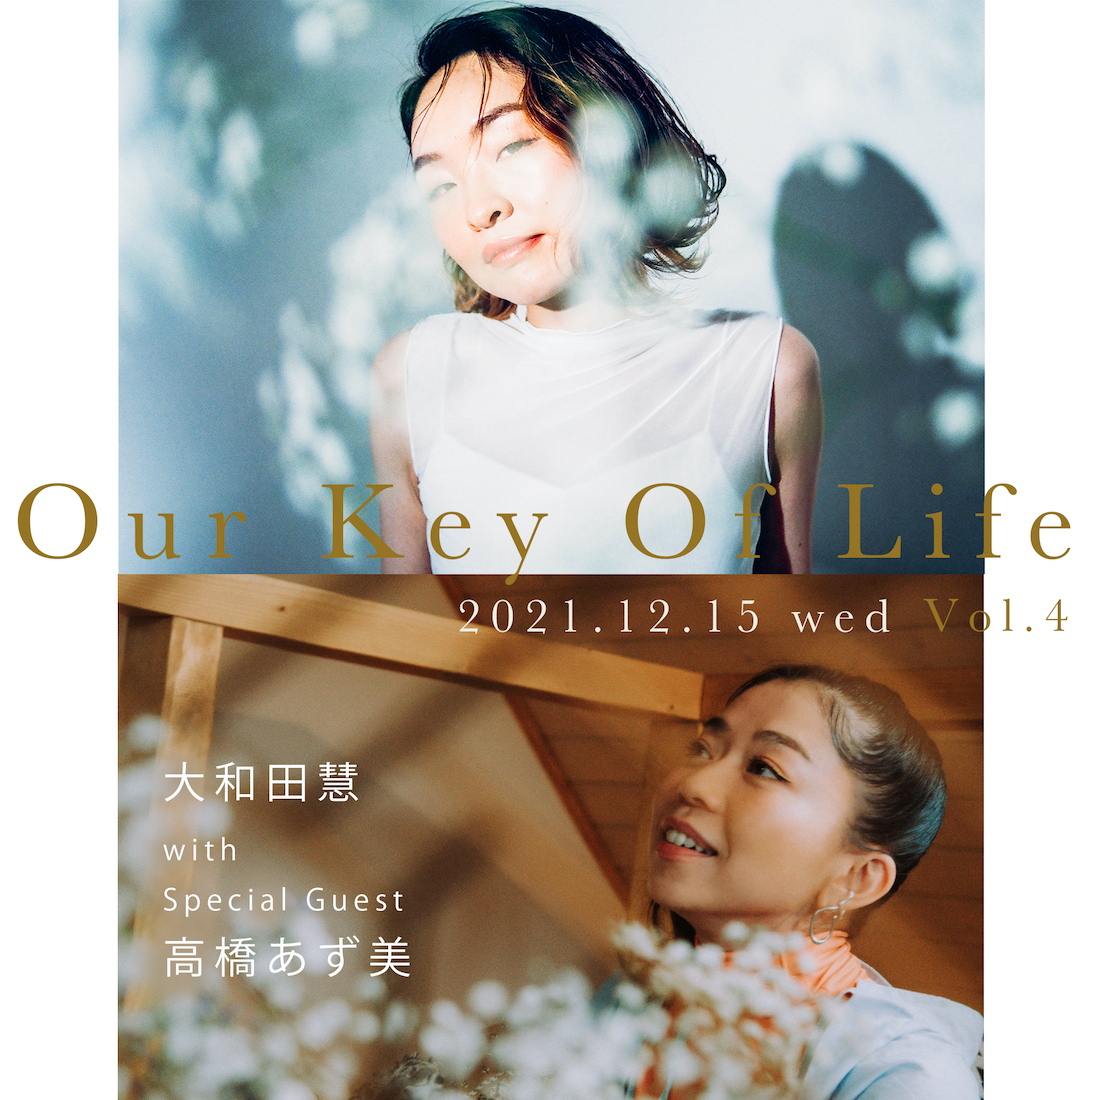 大和田慧 『Our Key Of Life vol.4- with Special Guest 高橋あず美』